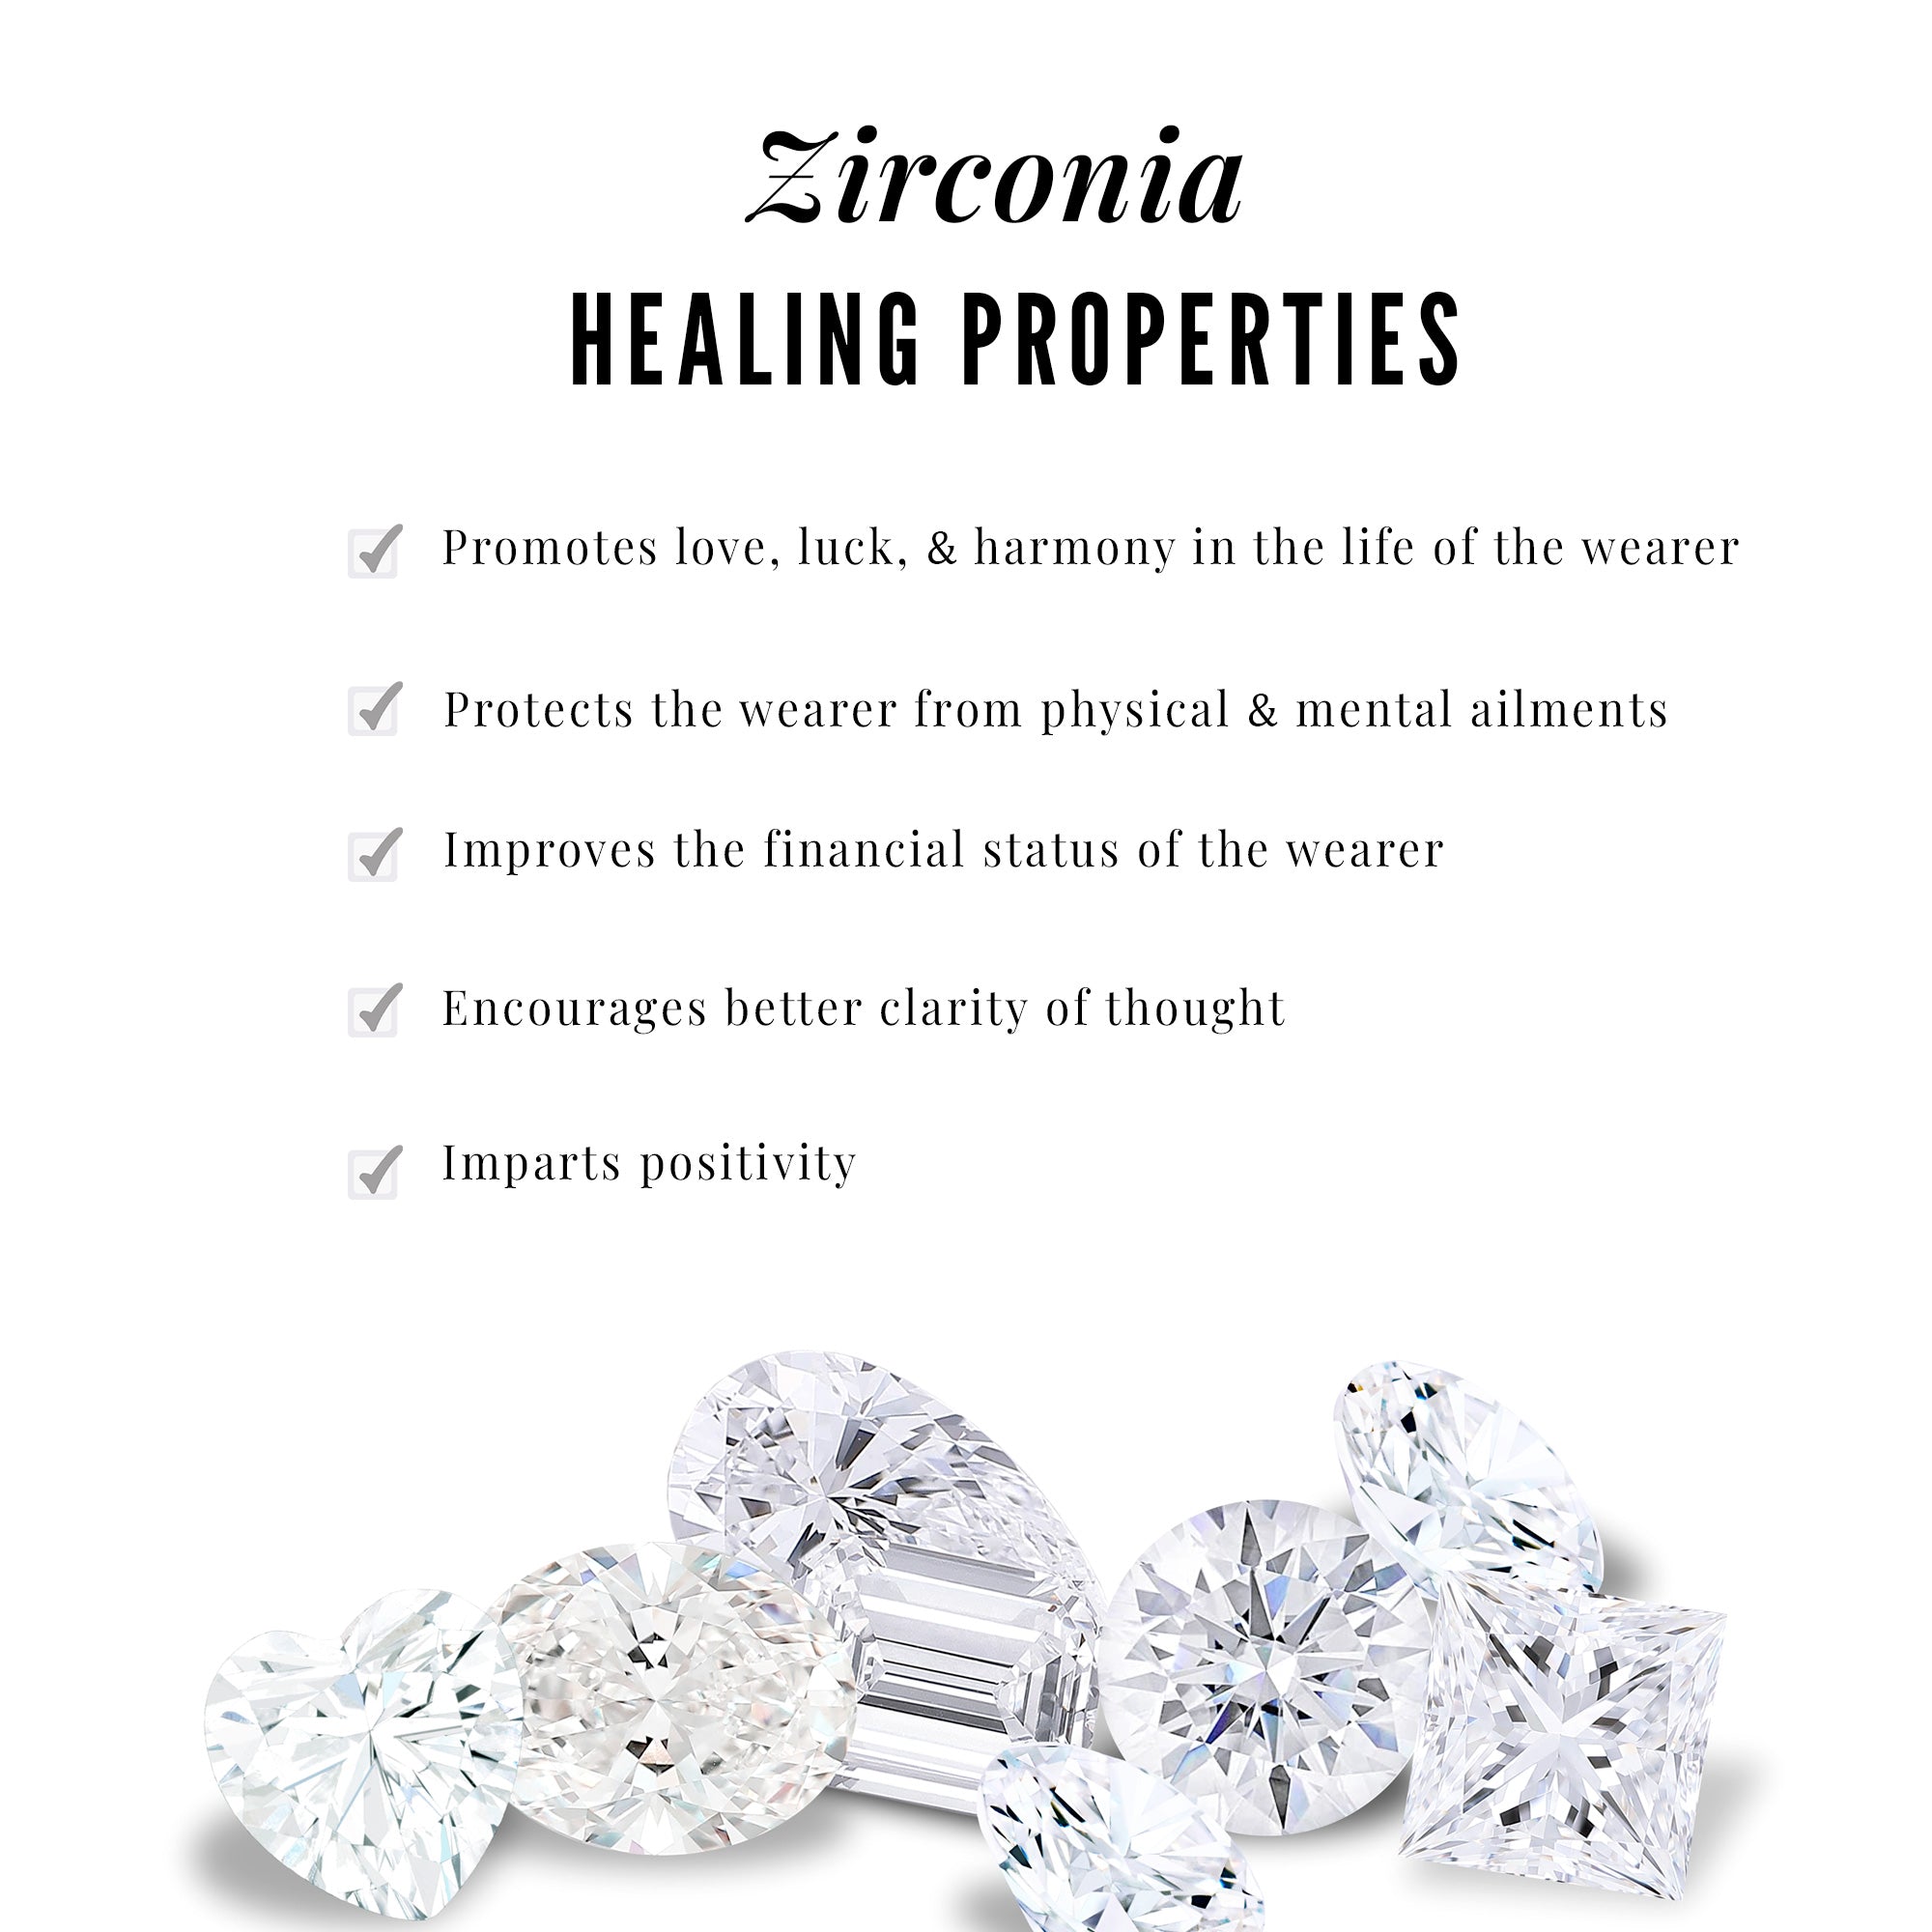 Cubic Zirconia Infinity Heart Pendant Necklace Zircon - ( AAAA ) - Quality - Rosec Jewels